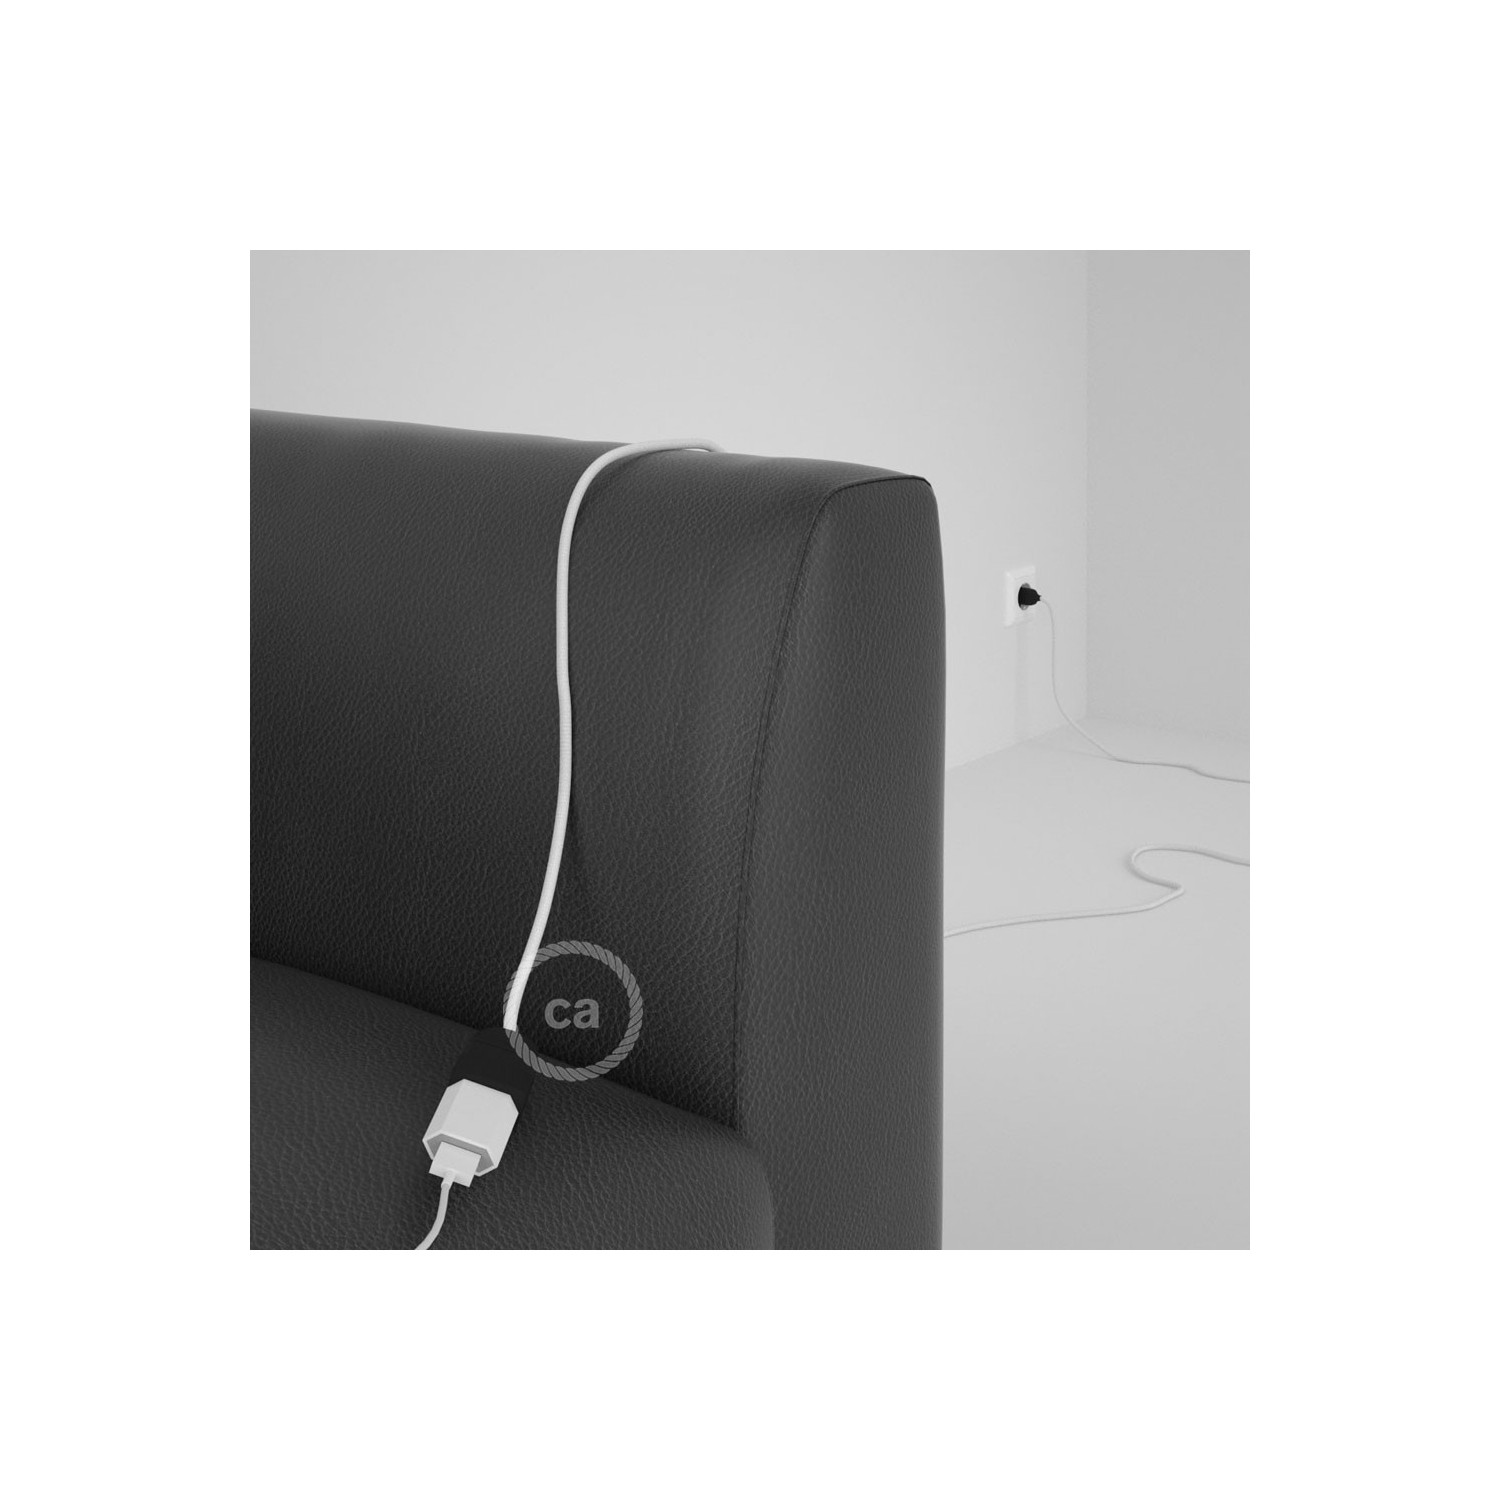 Rallonge électrique avec câble textile RM01 Effet Soie Blanc 2P 10A Made in Italy.